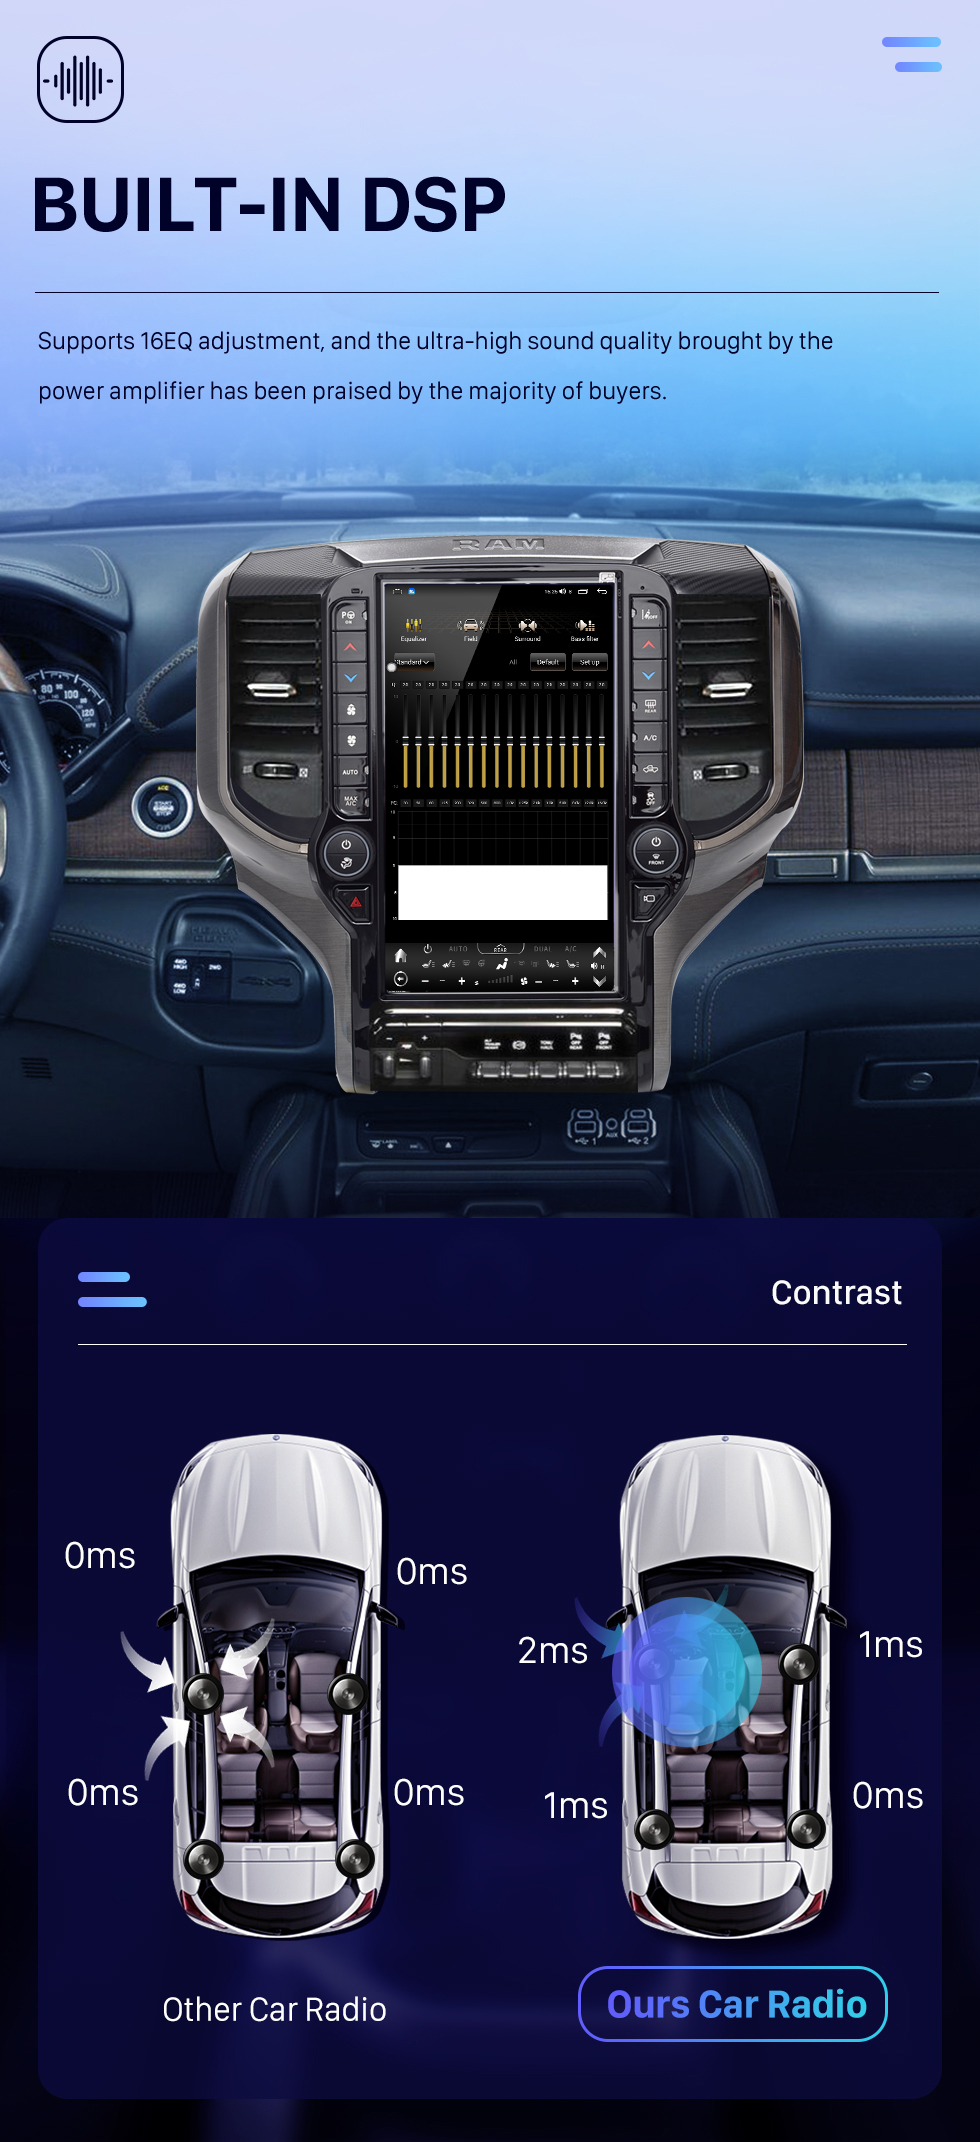 Seicane Carplay OEM 12.1 pulgadas Android 10.0 para 2019 2020 2021 Dodge RAM Radio Sistema de navegación GPS automático Android con pantalla táctil HD Soporte Bluetooth OBD2 DVR